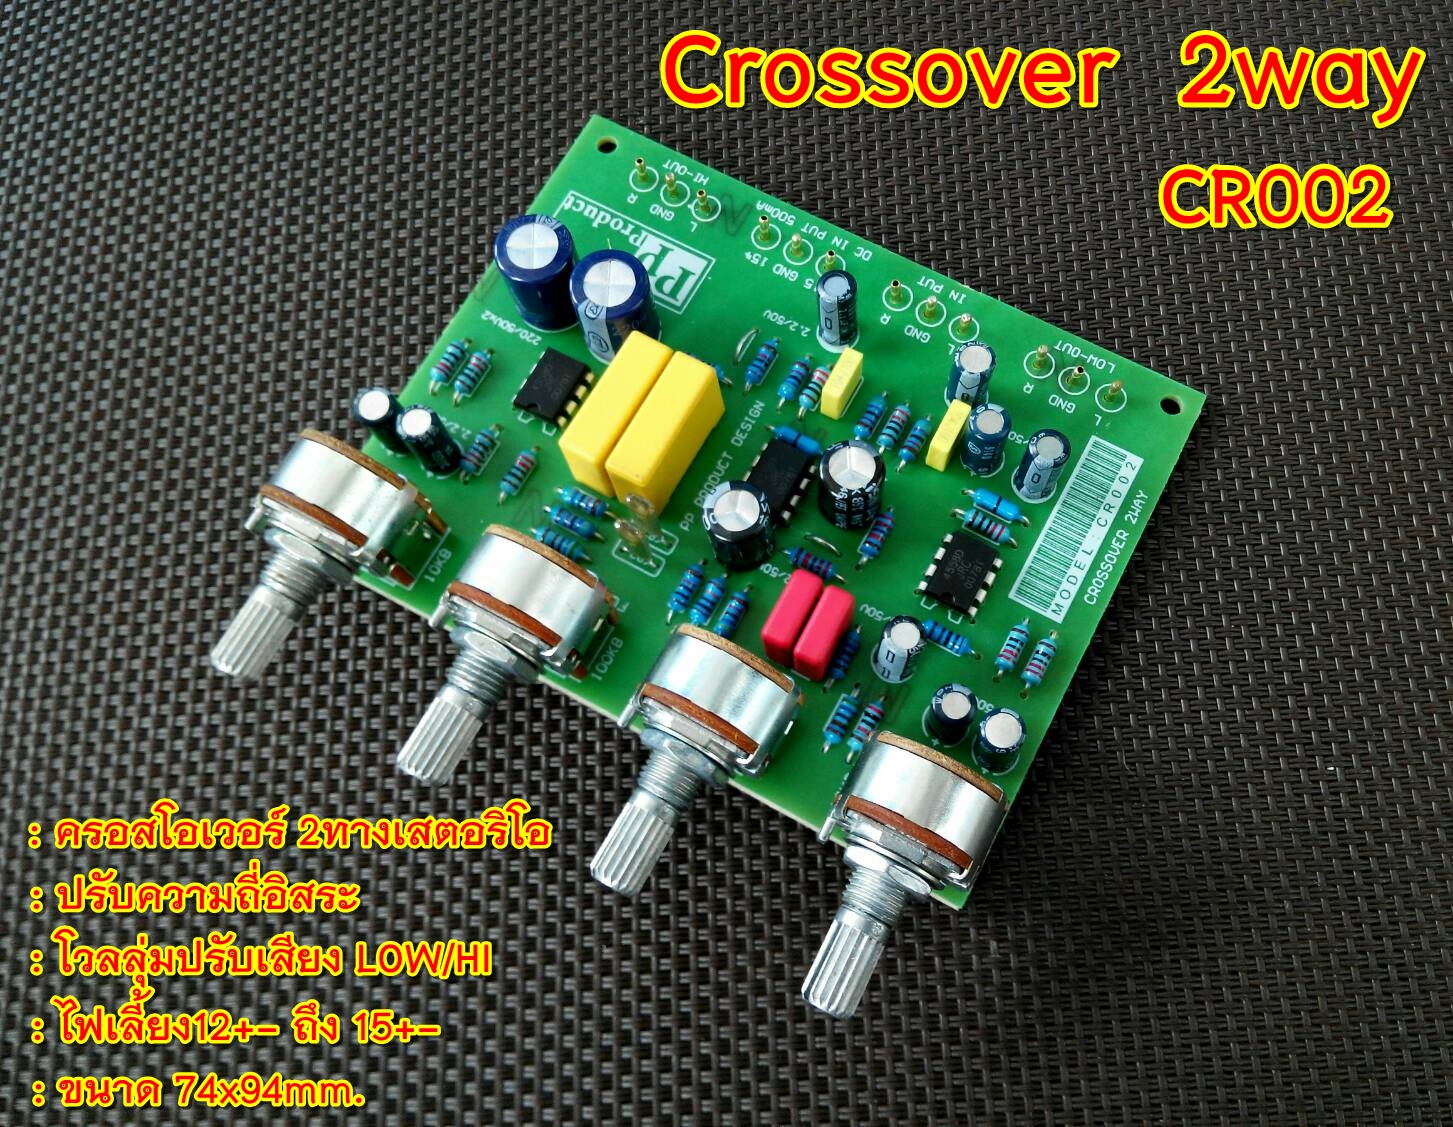 เกี่ยวกับ Crossover 2Way ครอสโอเวอร์ 2ทาง CR002